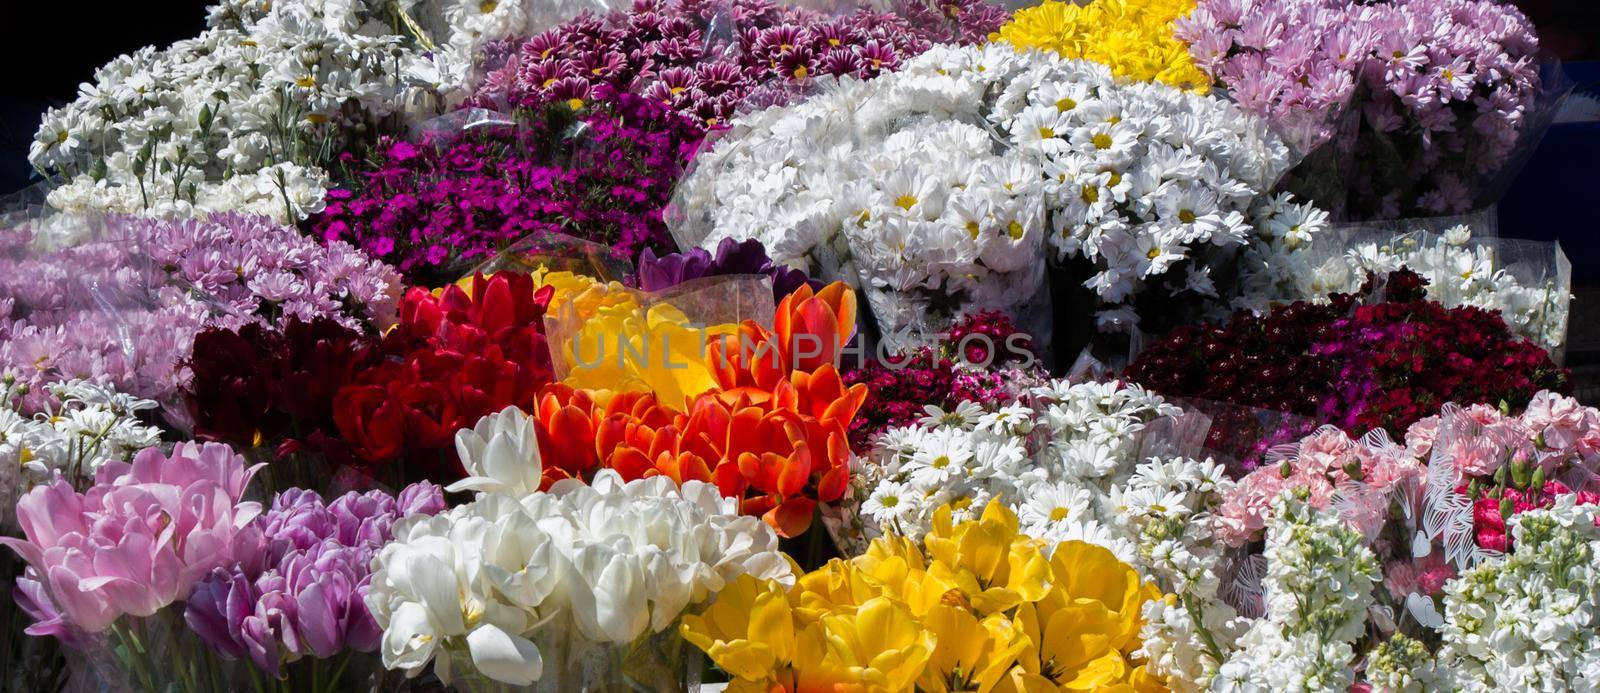 Fresh colorful Flowers put in vases by berkay